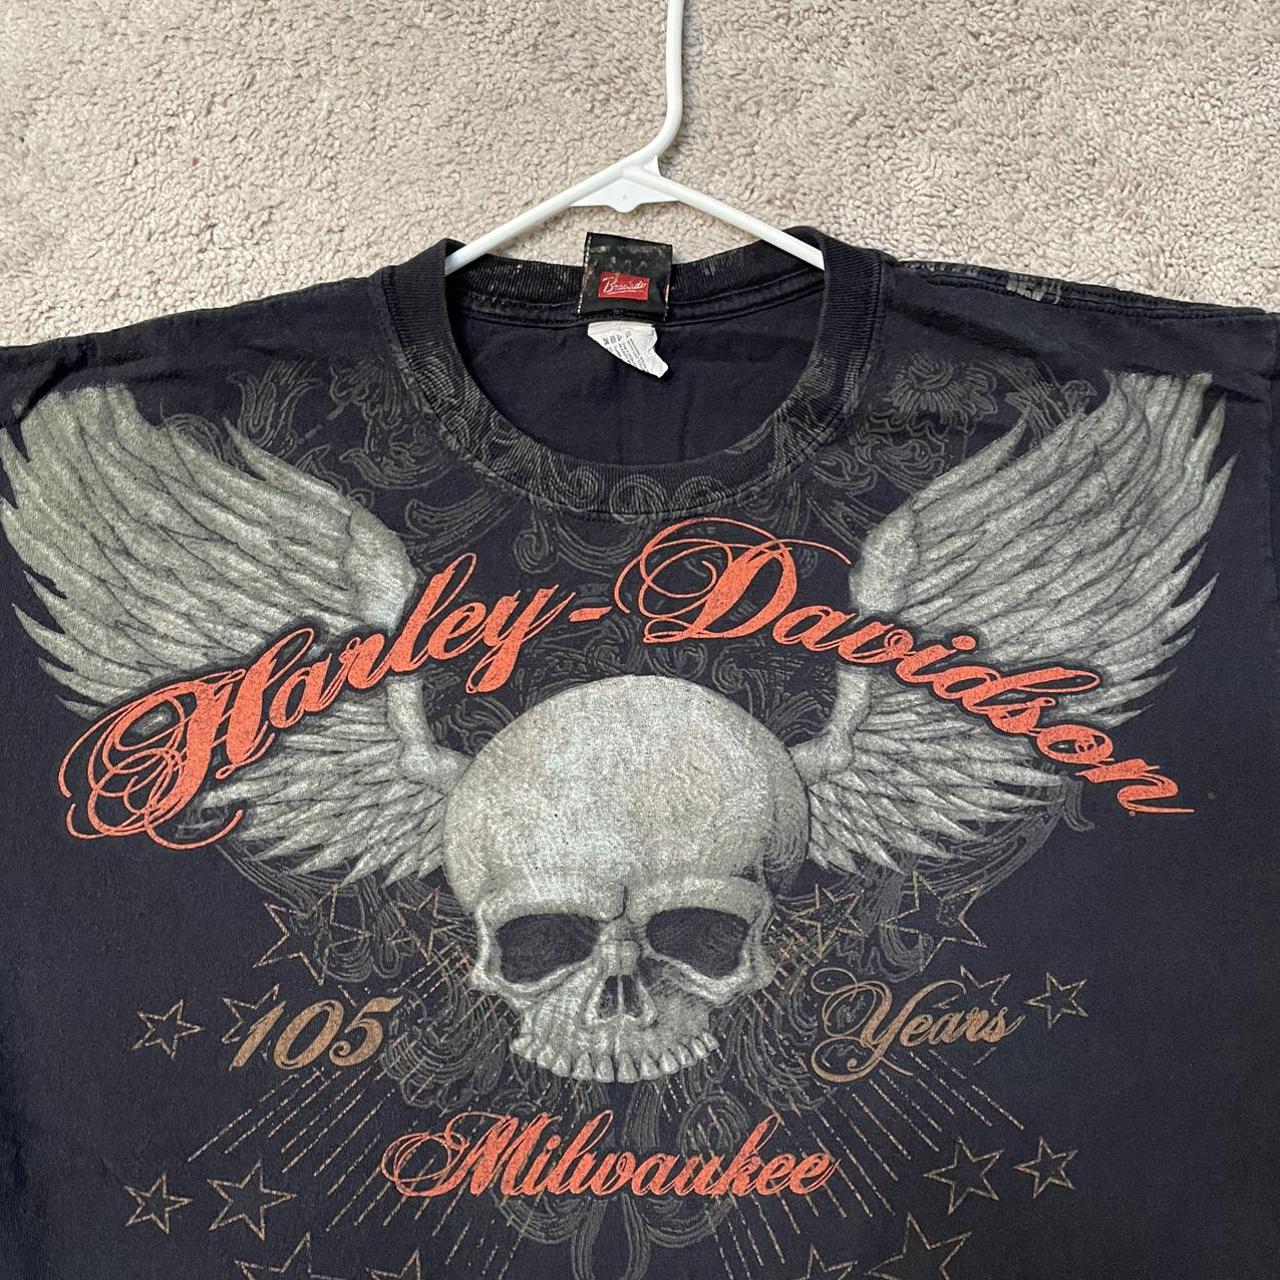 Harley Davidson Men's Black and Orange T-shirt | Depop